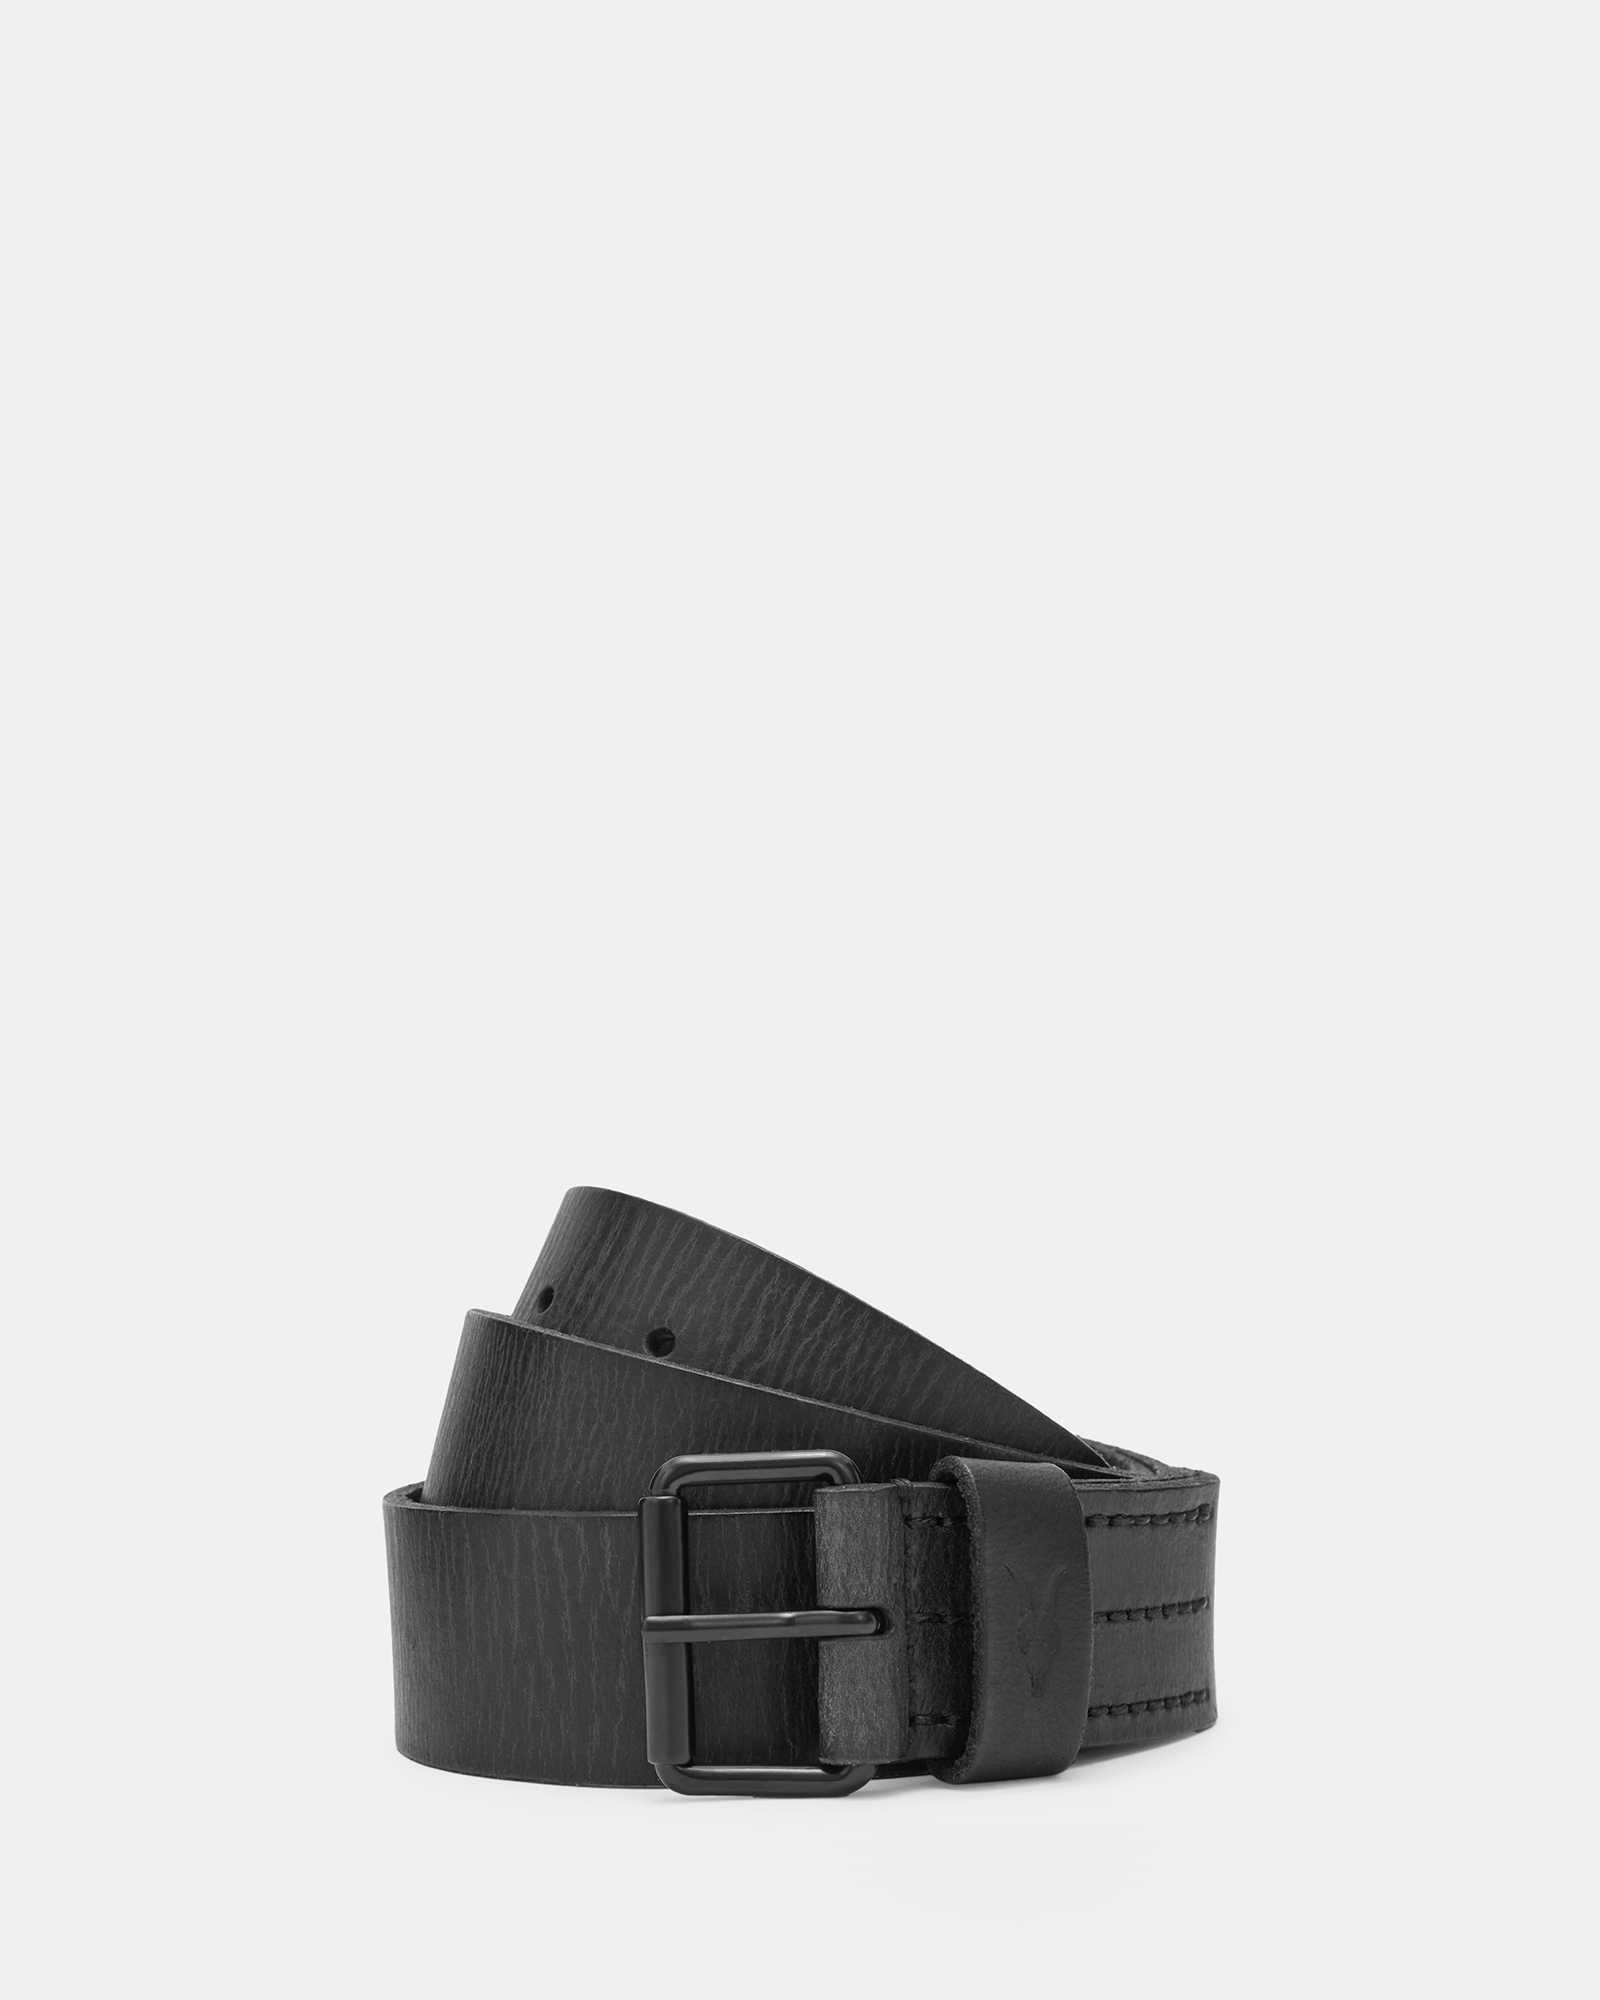 AllSaints Dunston Leather Embossed Belt,, Size: